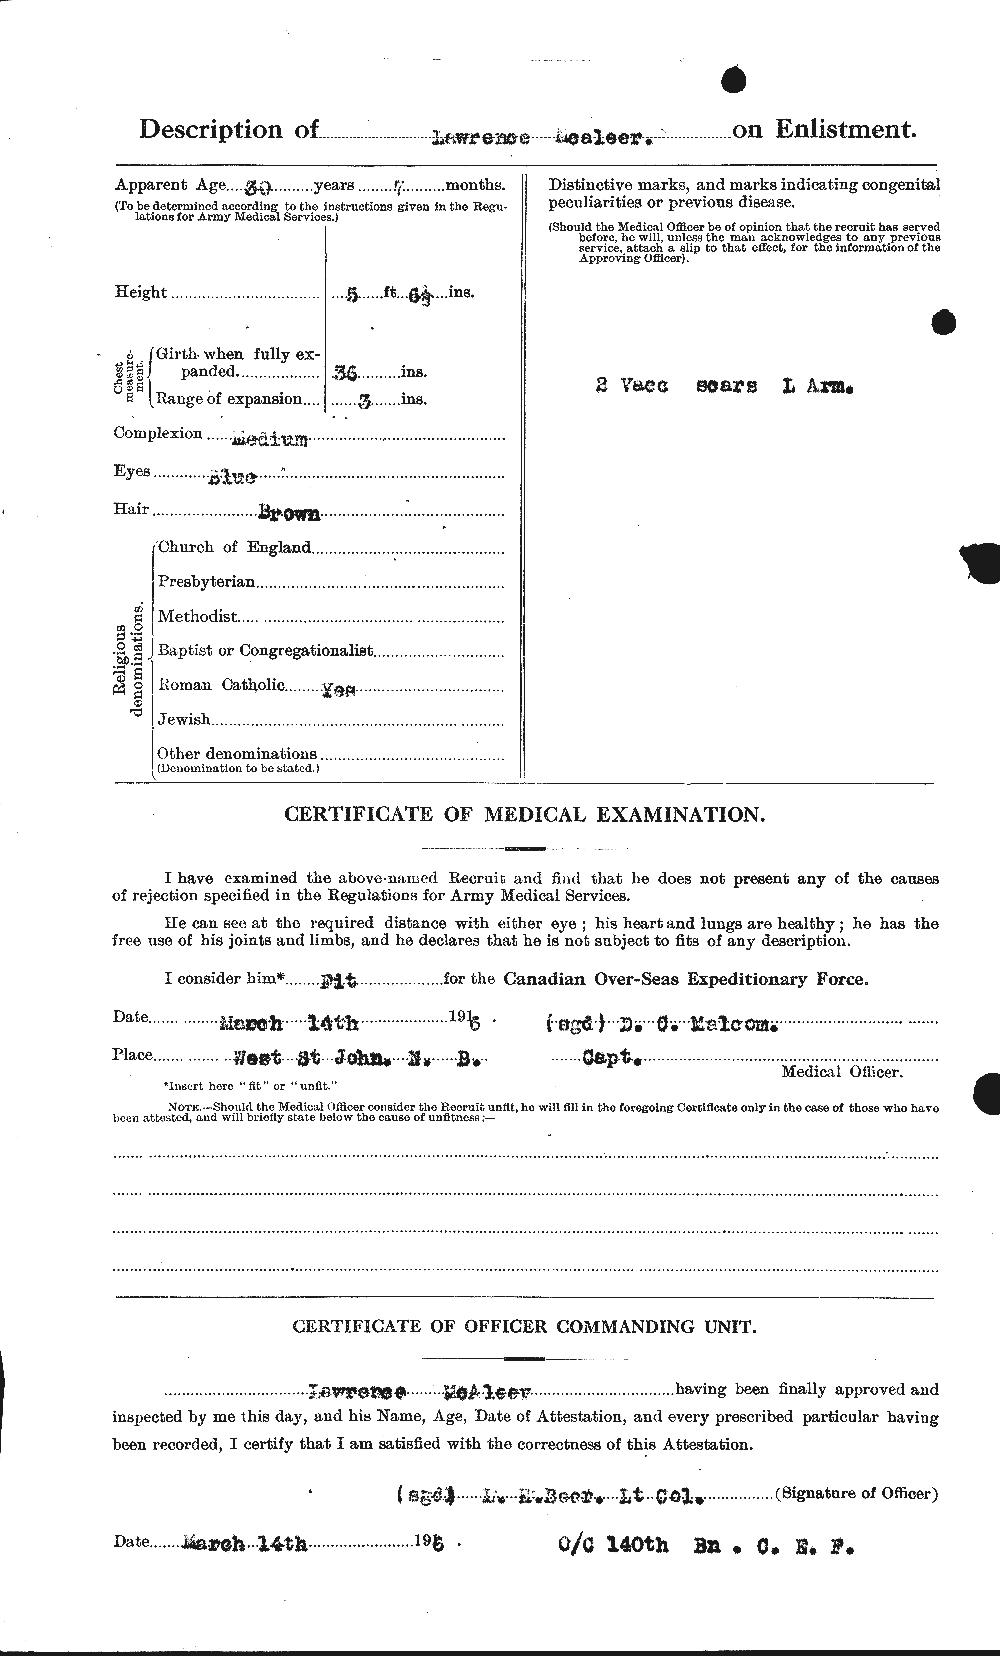 Dossiers du Personnel de la Première Guerre mondiale - CEC 513082b